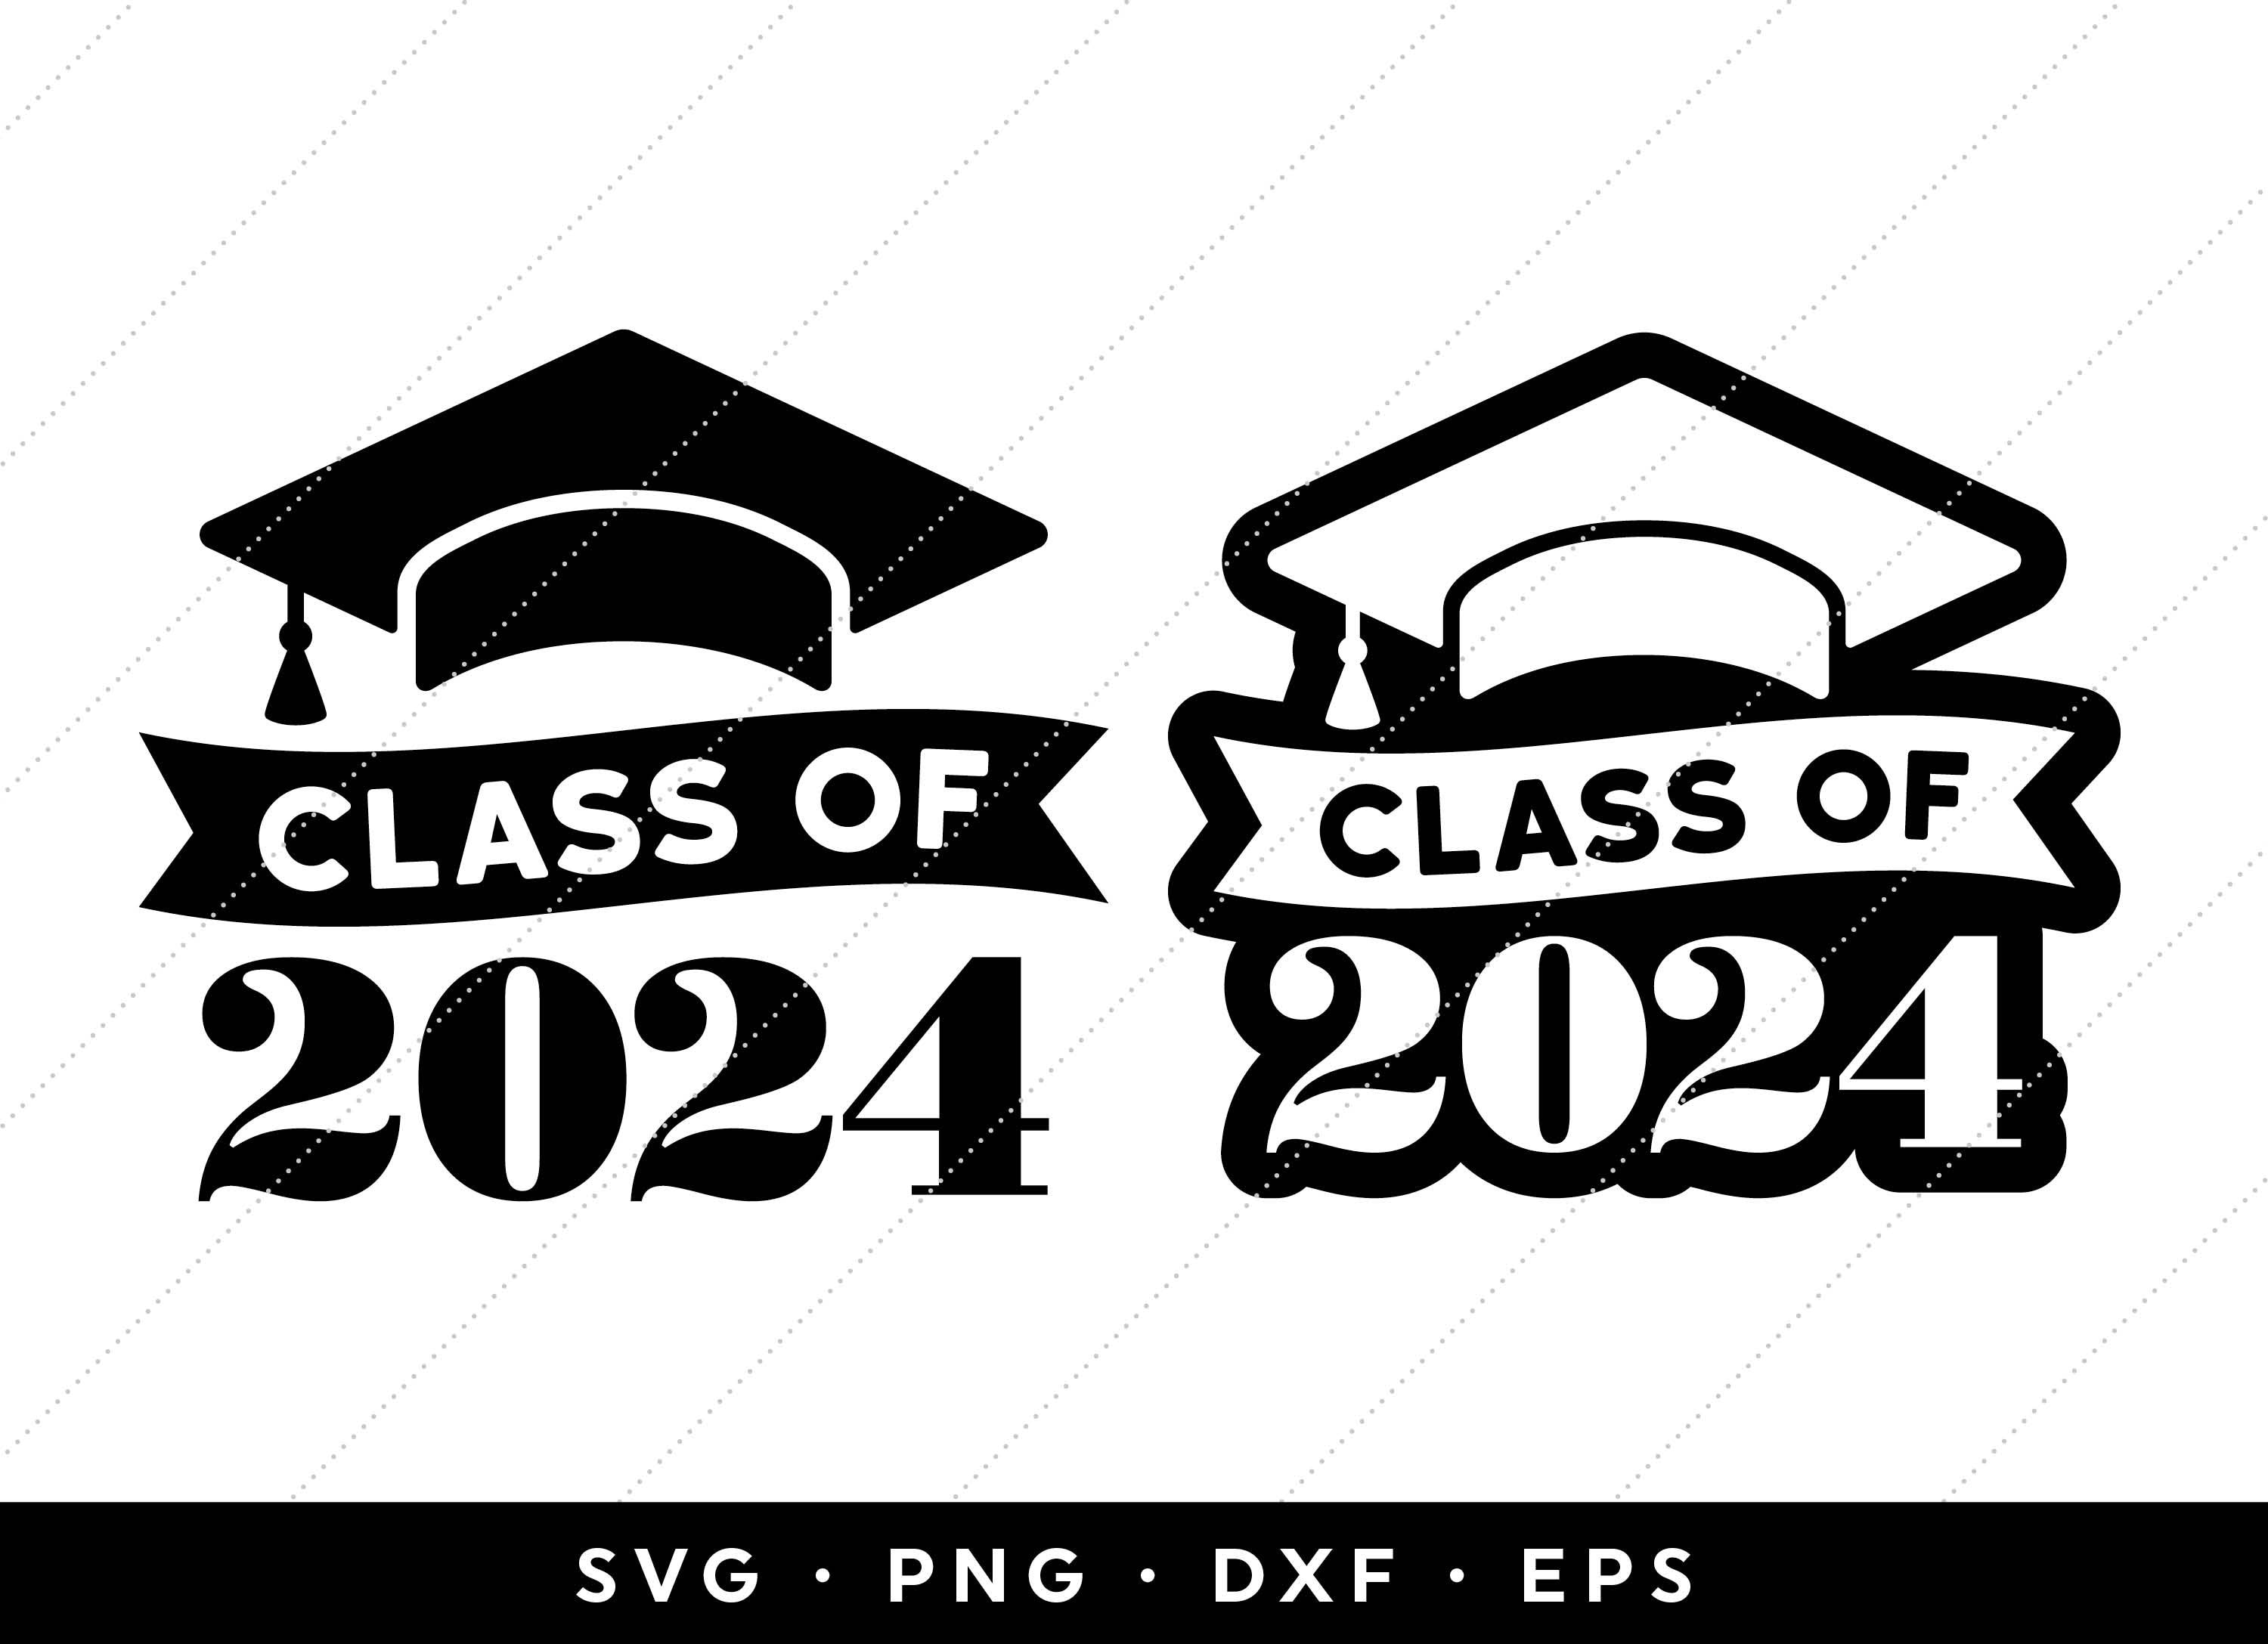 Class of 2024 SVG Seniors 2024 SVG Graduation 2024 SVG 2024 Etsy Denmark